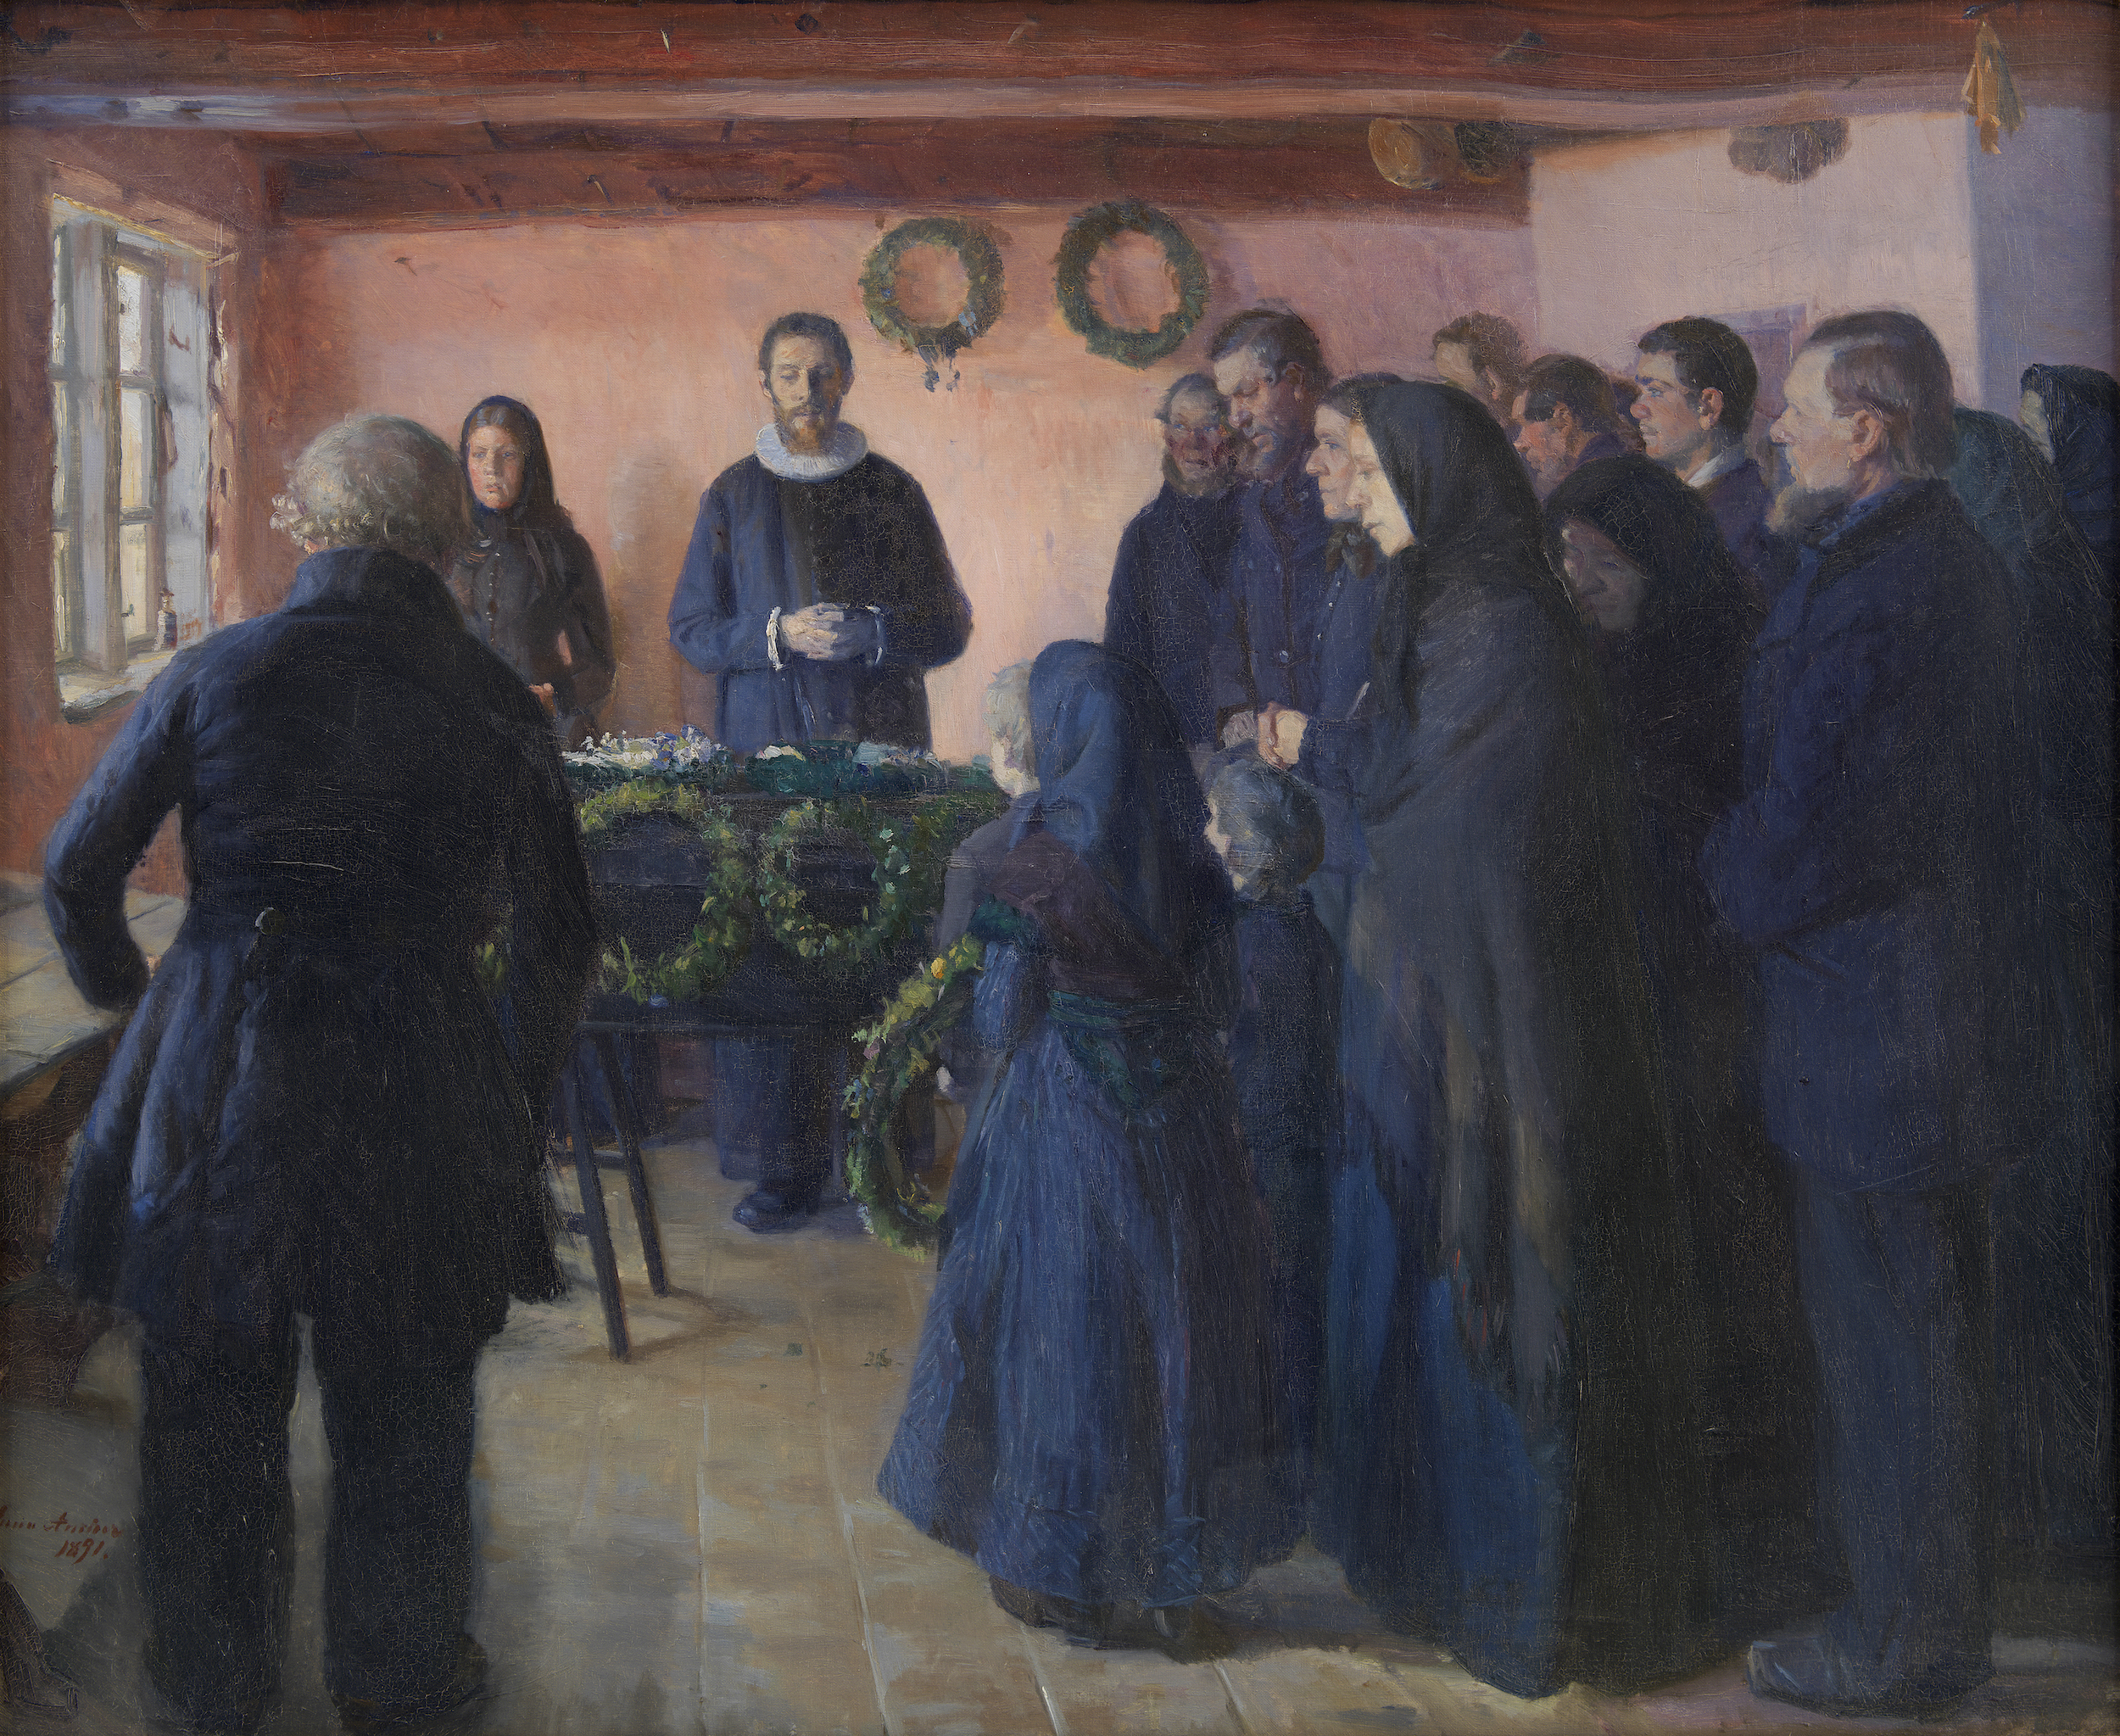 一场葬礼 by 安娜· 安克尔 - 1891 - 103.5 x 124.5 cm 歐洲數位圖書館